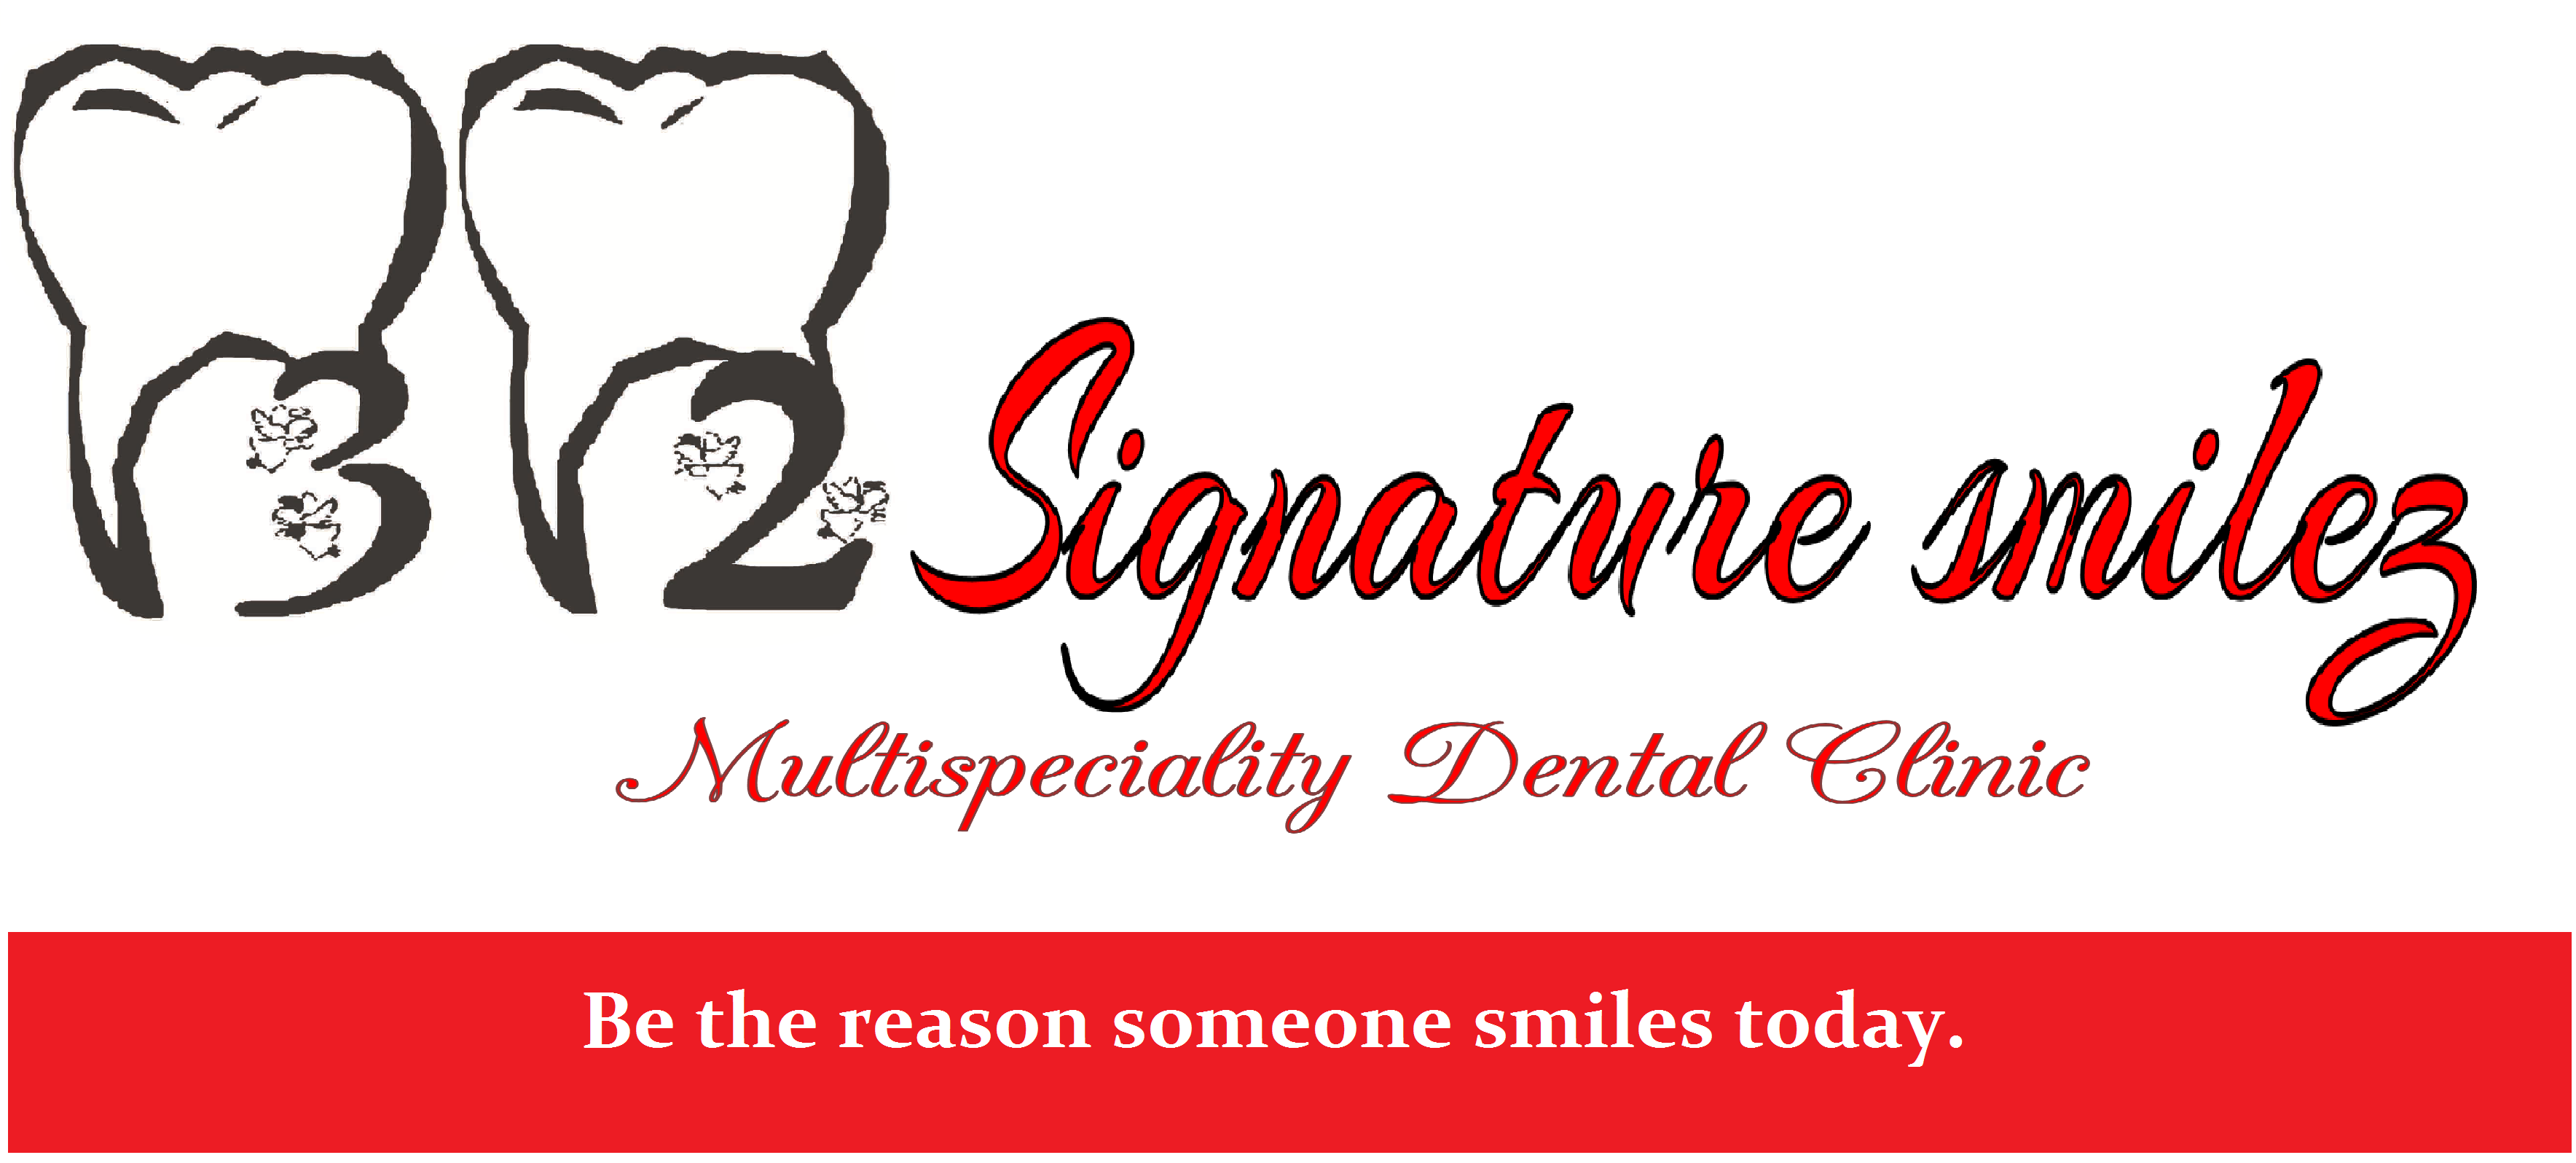 Logo for Member of IndiaDentalClinic.com - 32 Signature Smilez Dental Clinic & Implant Centre